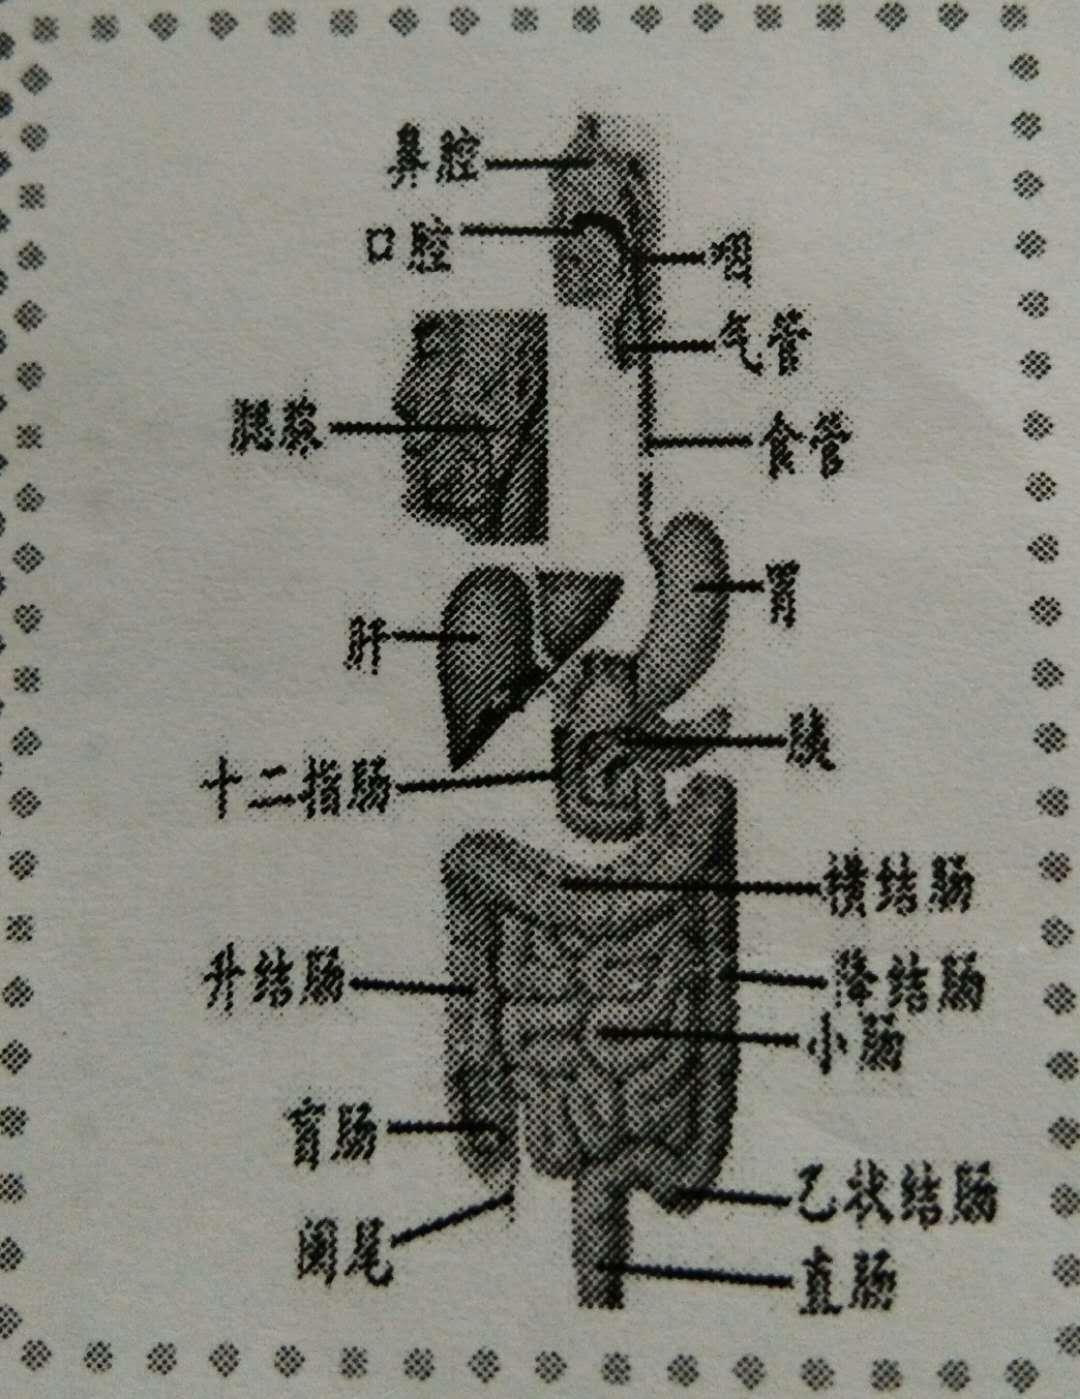 人体胃和十二指肠图图片